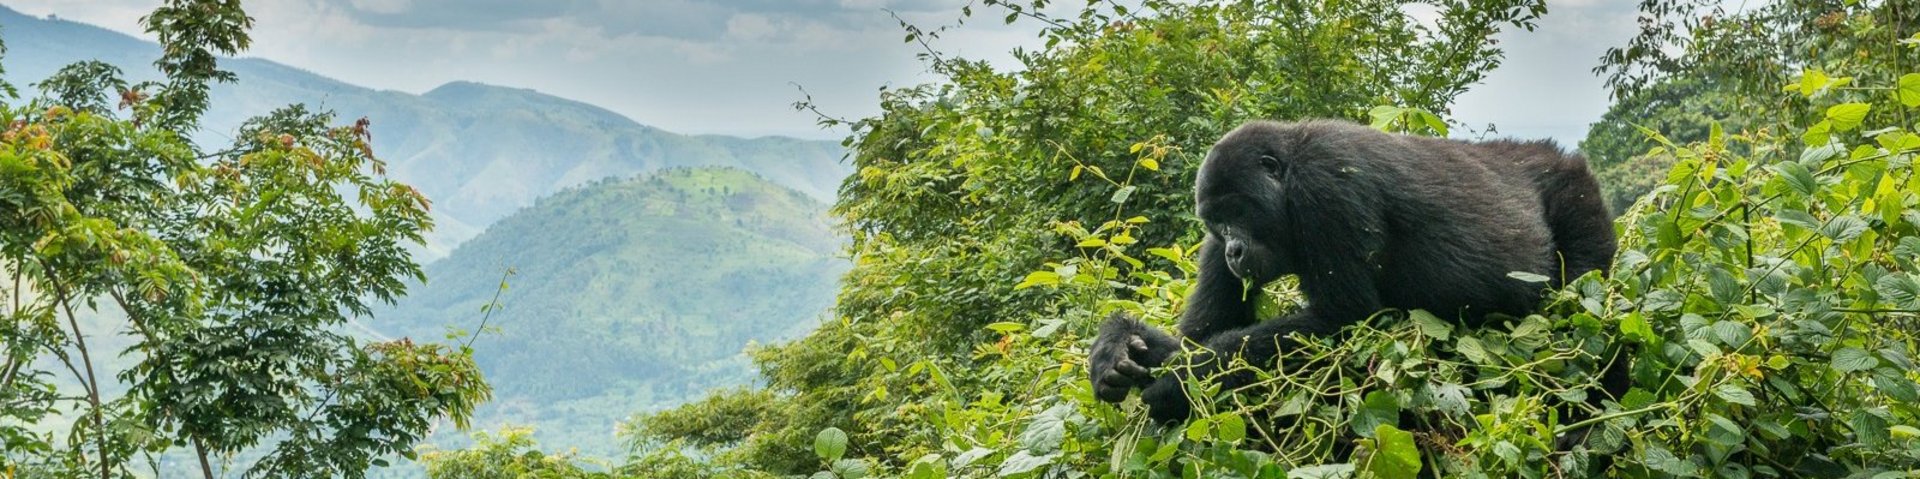 Berggorilla auf einem Baum in Uganda